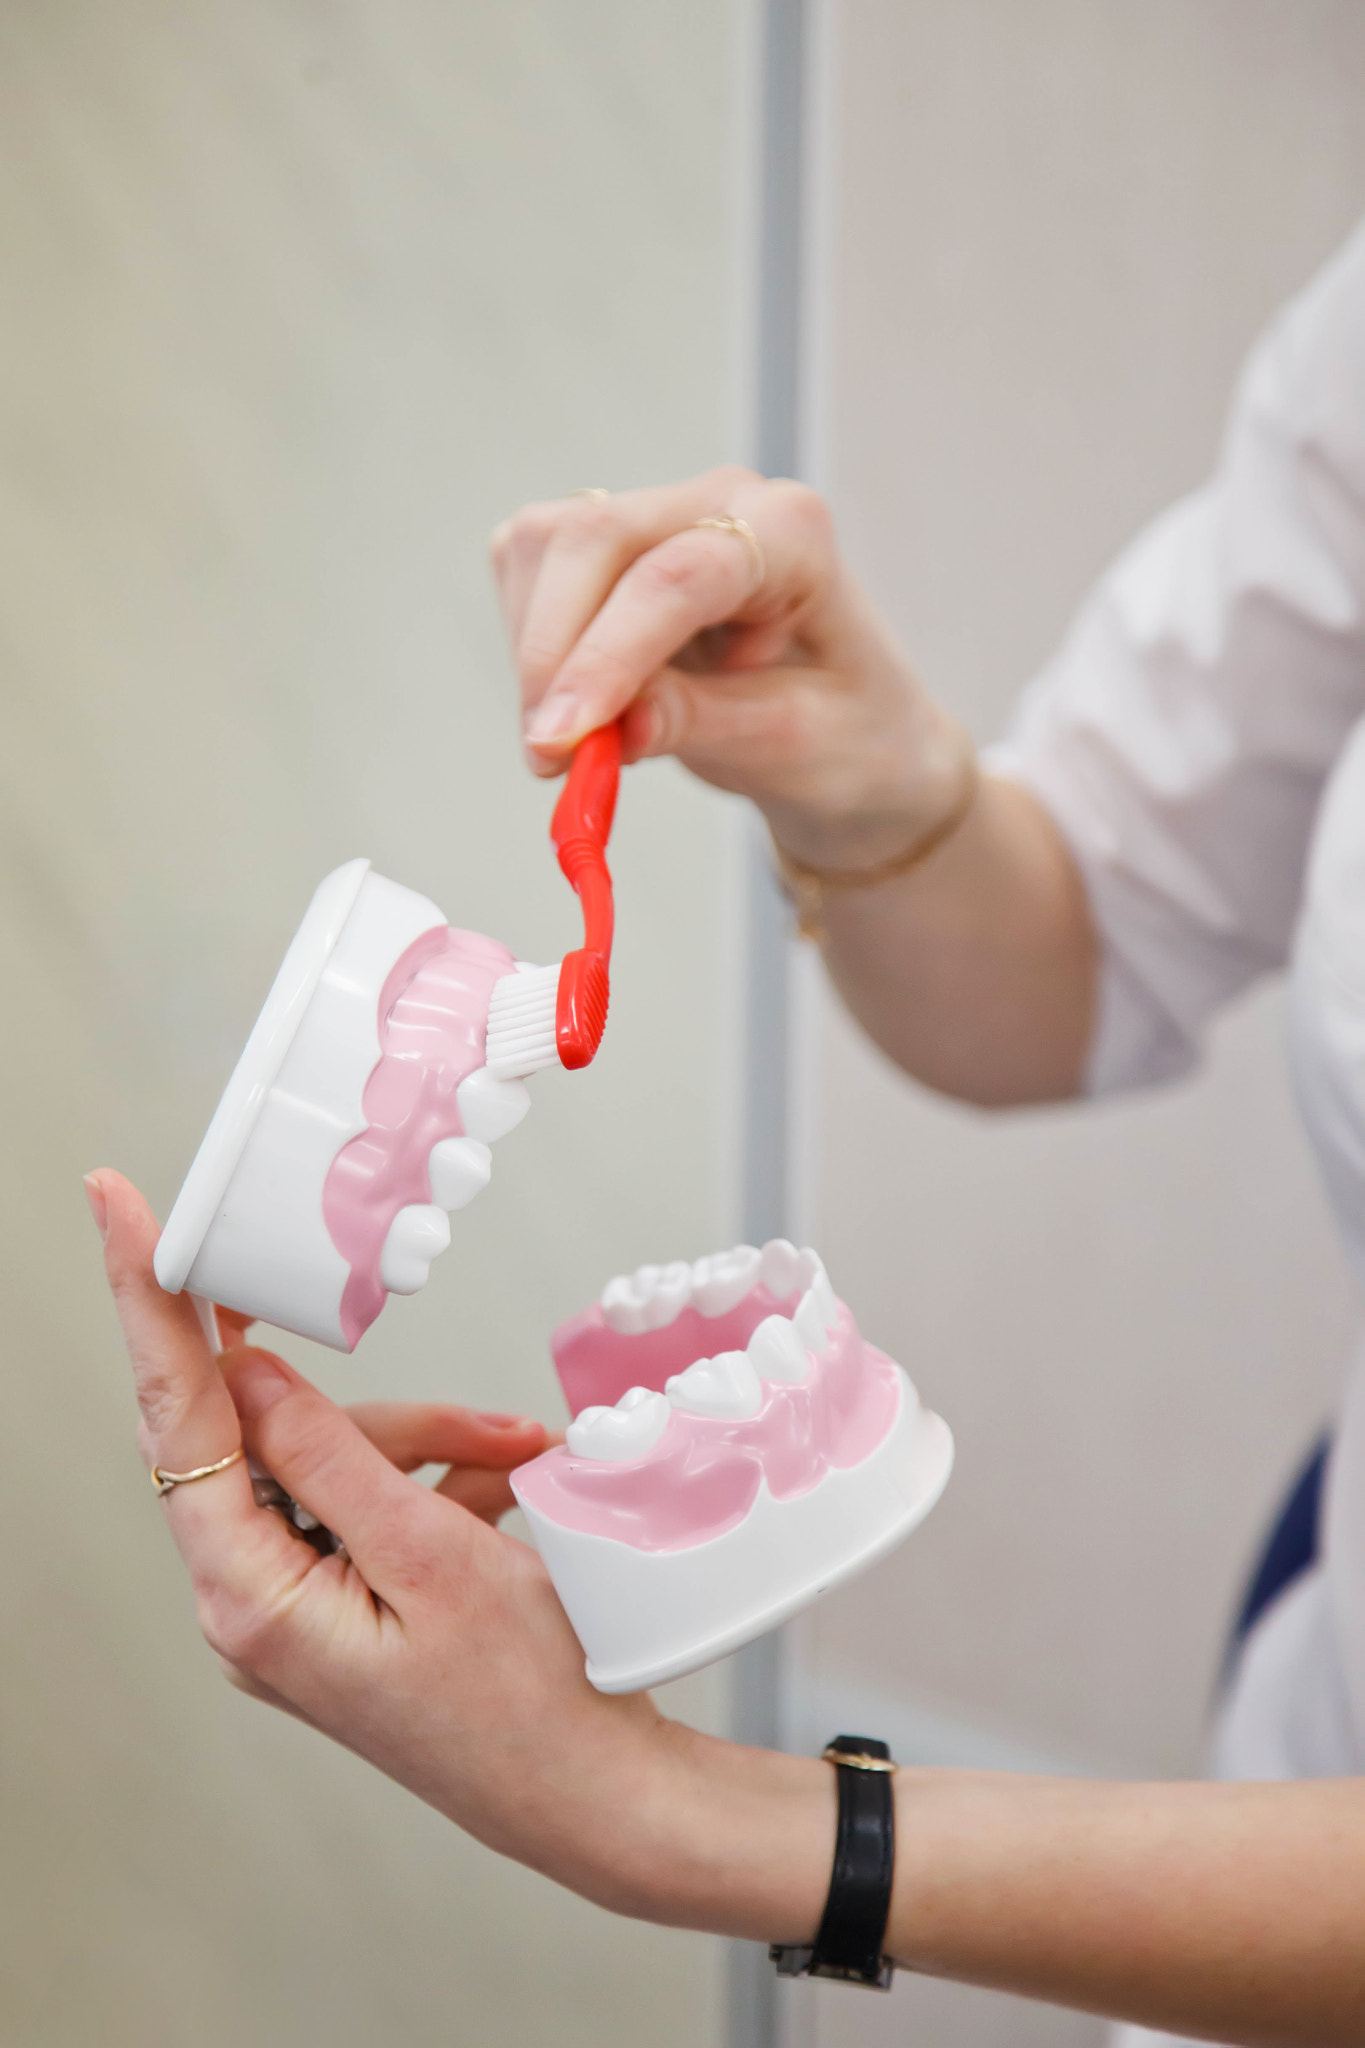 Female dentist prosthetist shows rules for brushing teeth